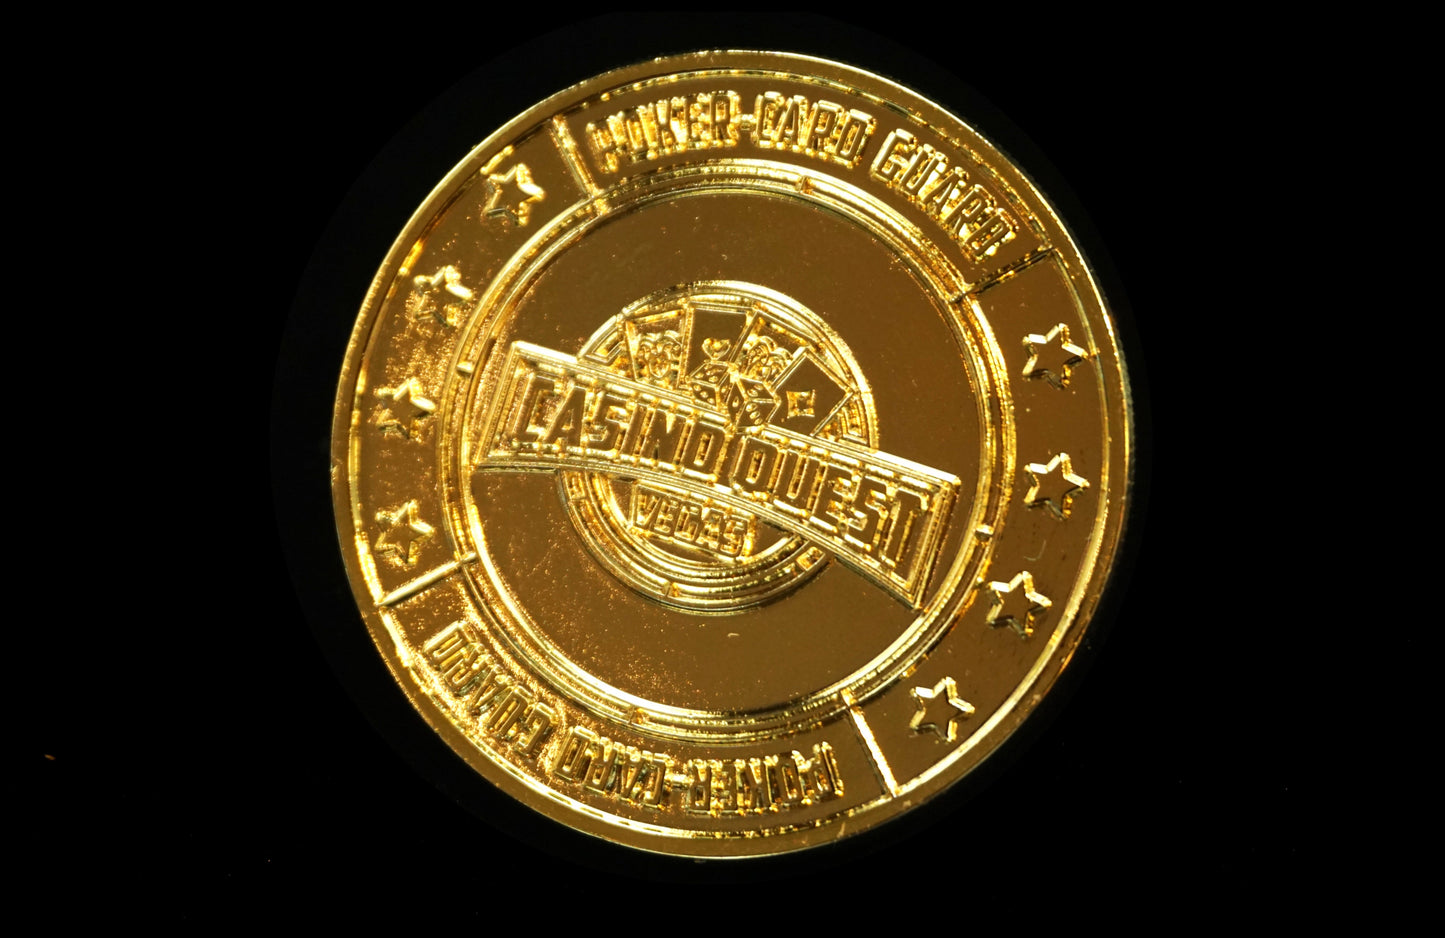 Poker Angel coin